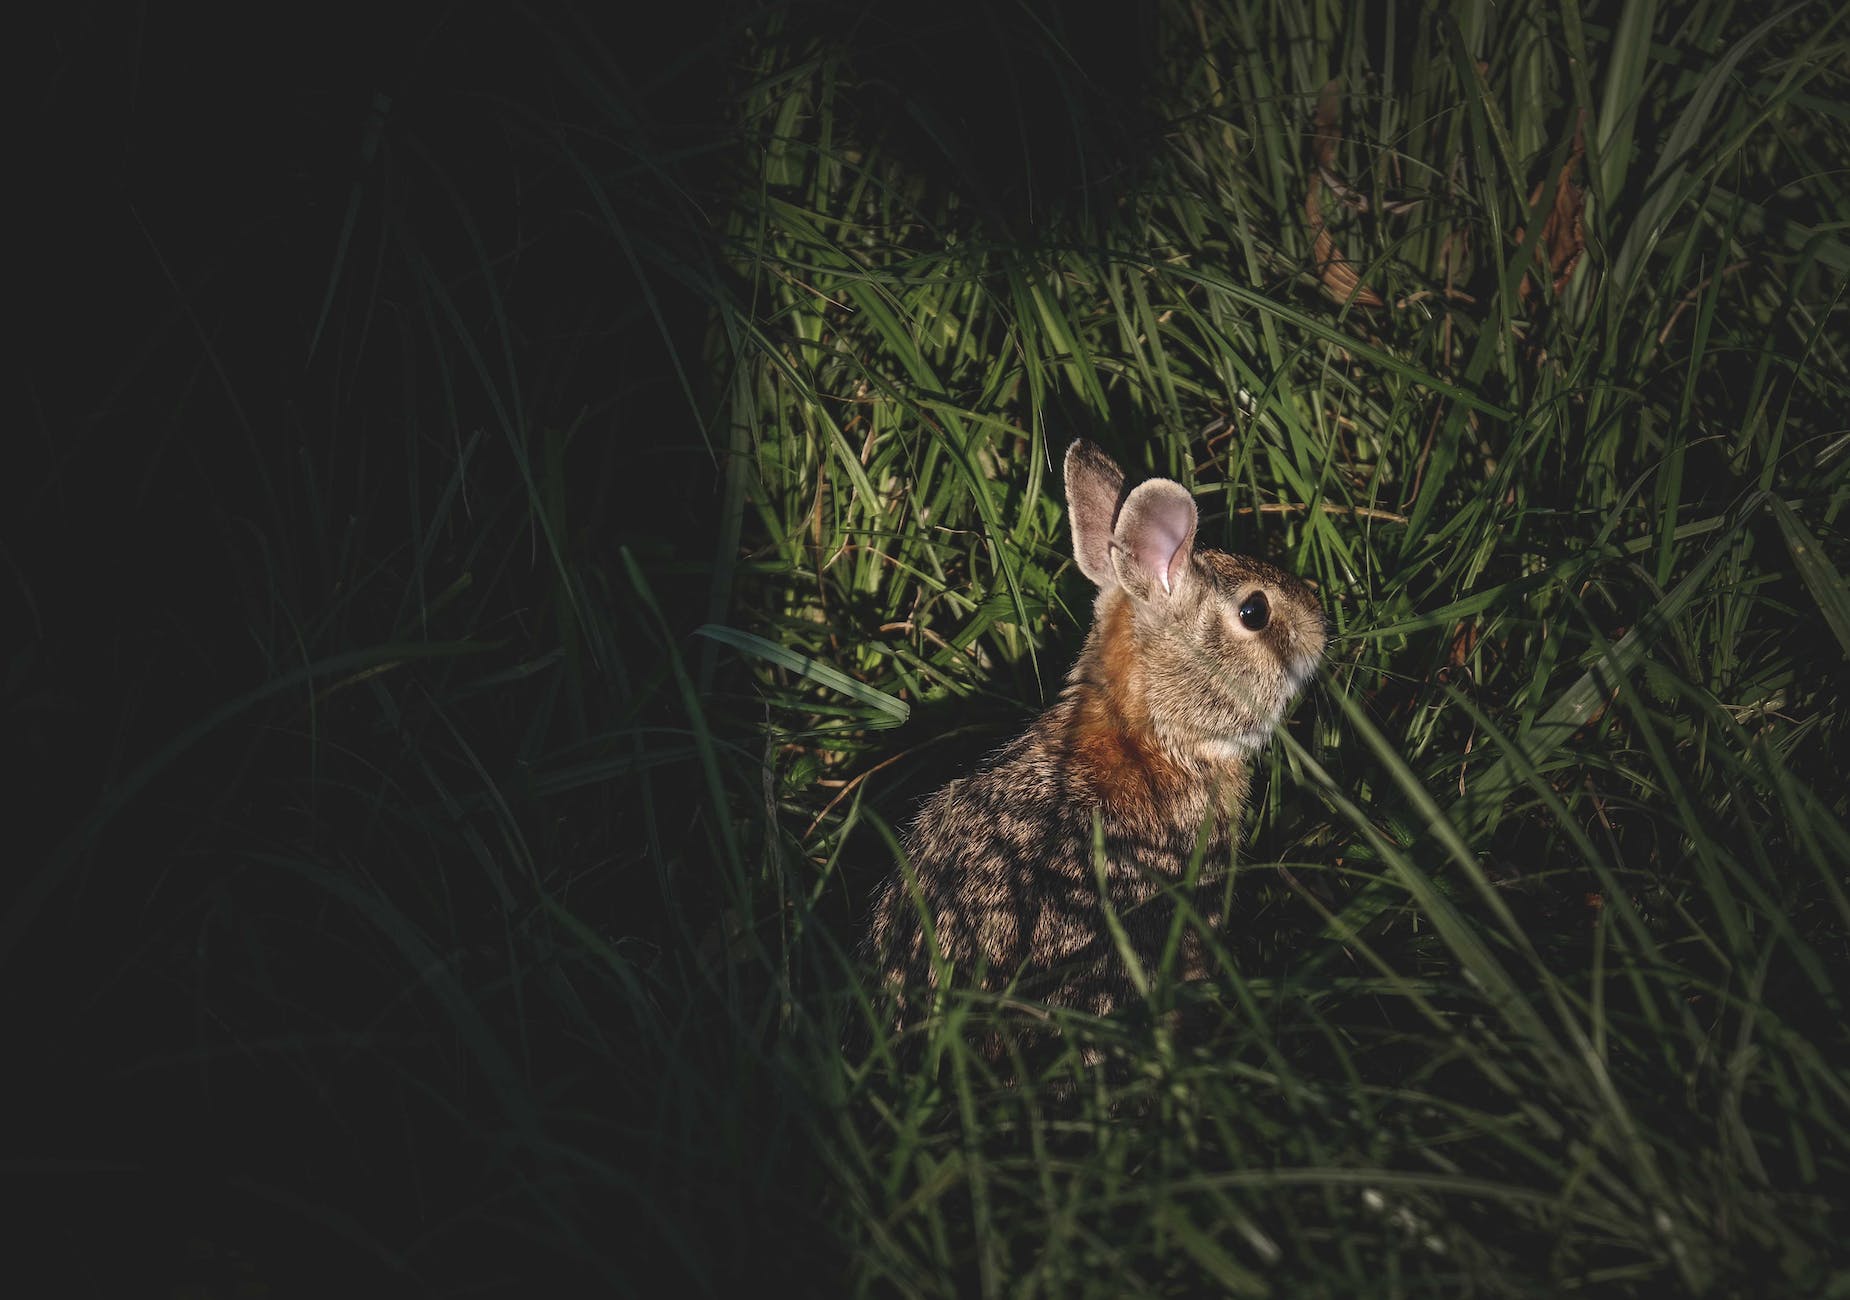 Significado espiritual del conejo que se cruza en tu camino –